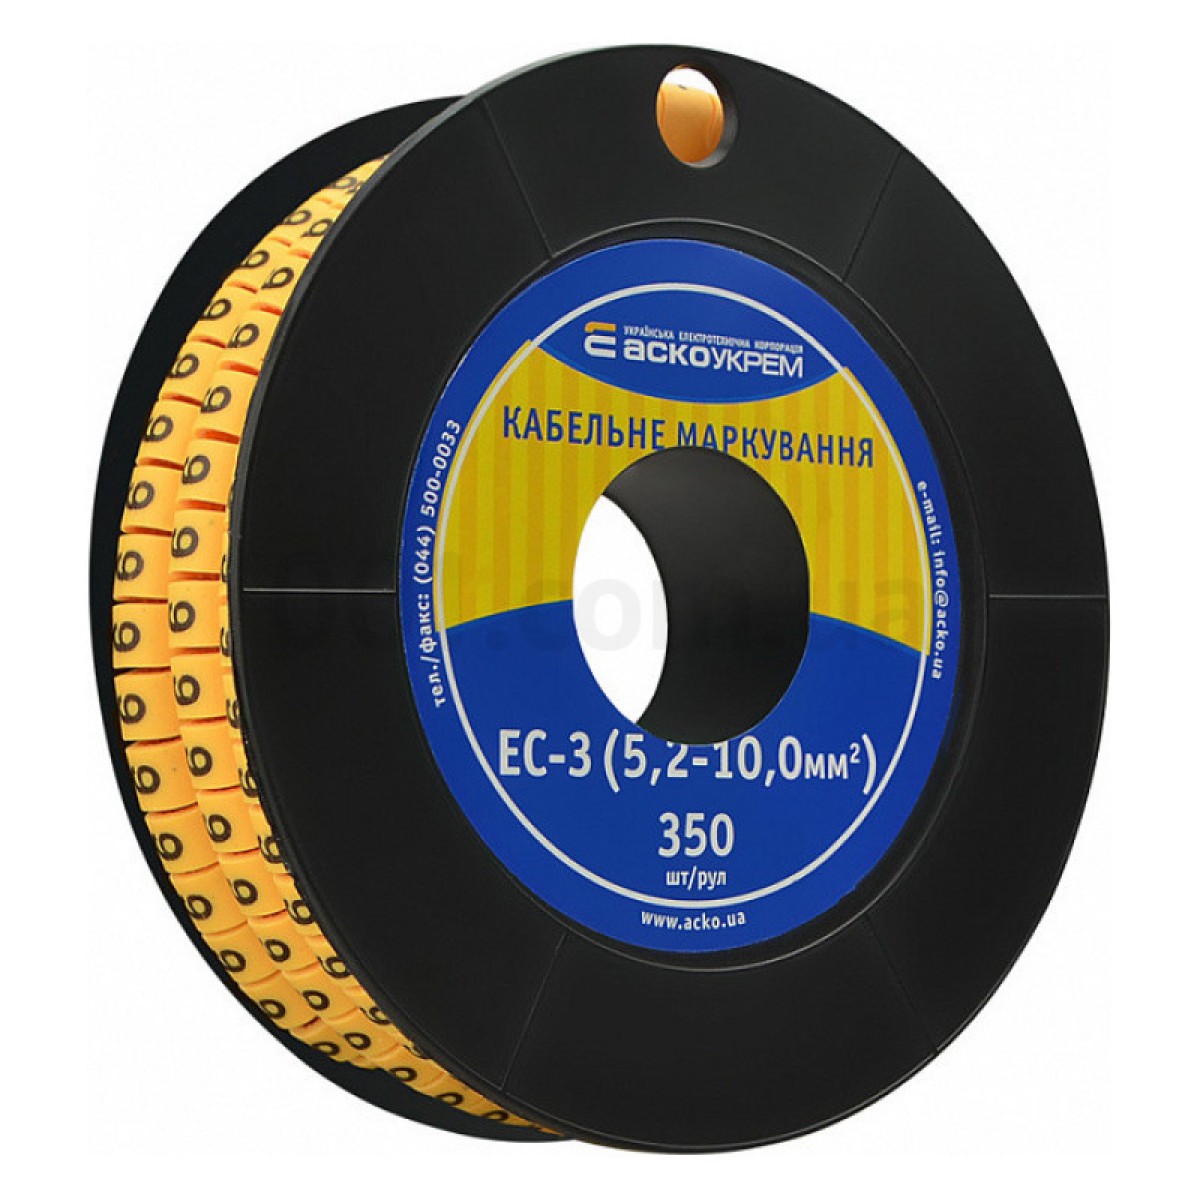 Маркування ЕС-3 для кабелю 5,2-10,0 мм² символ «6» (рулон 250 шт.), АСКО-УКРЕМ 98_98.jpg - фото 1